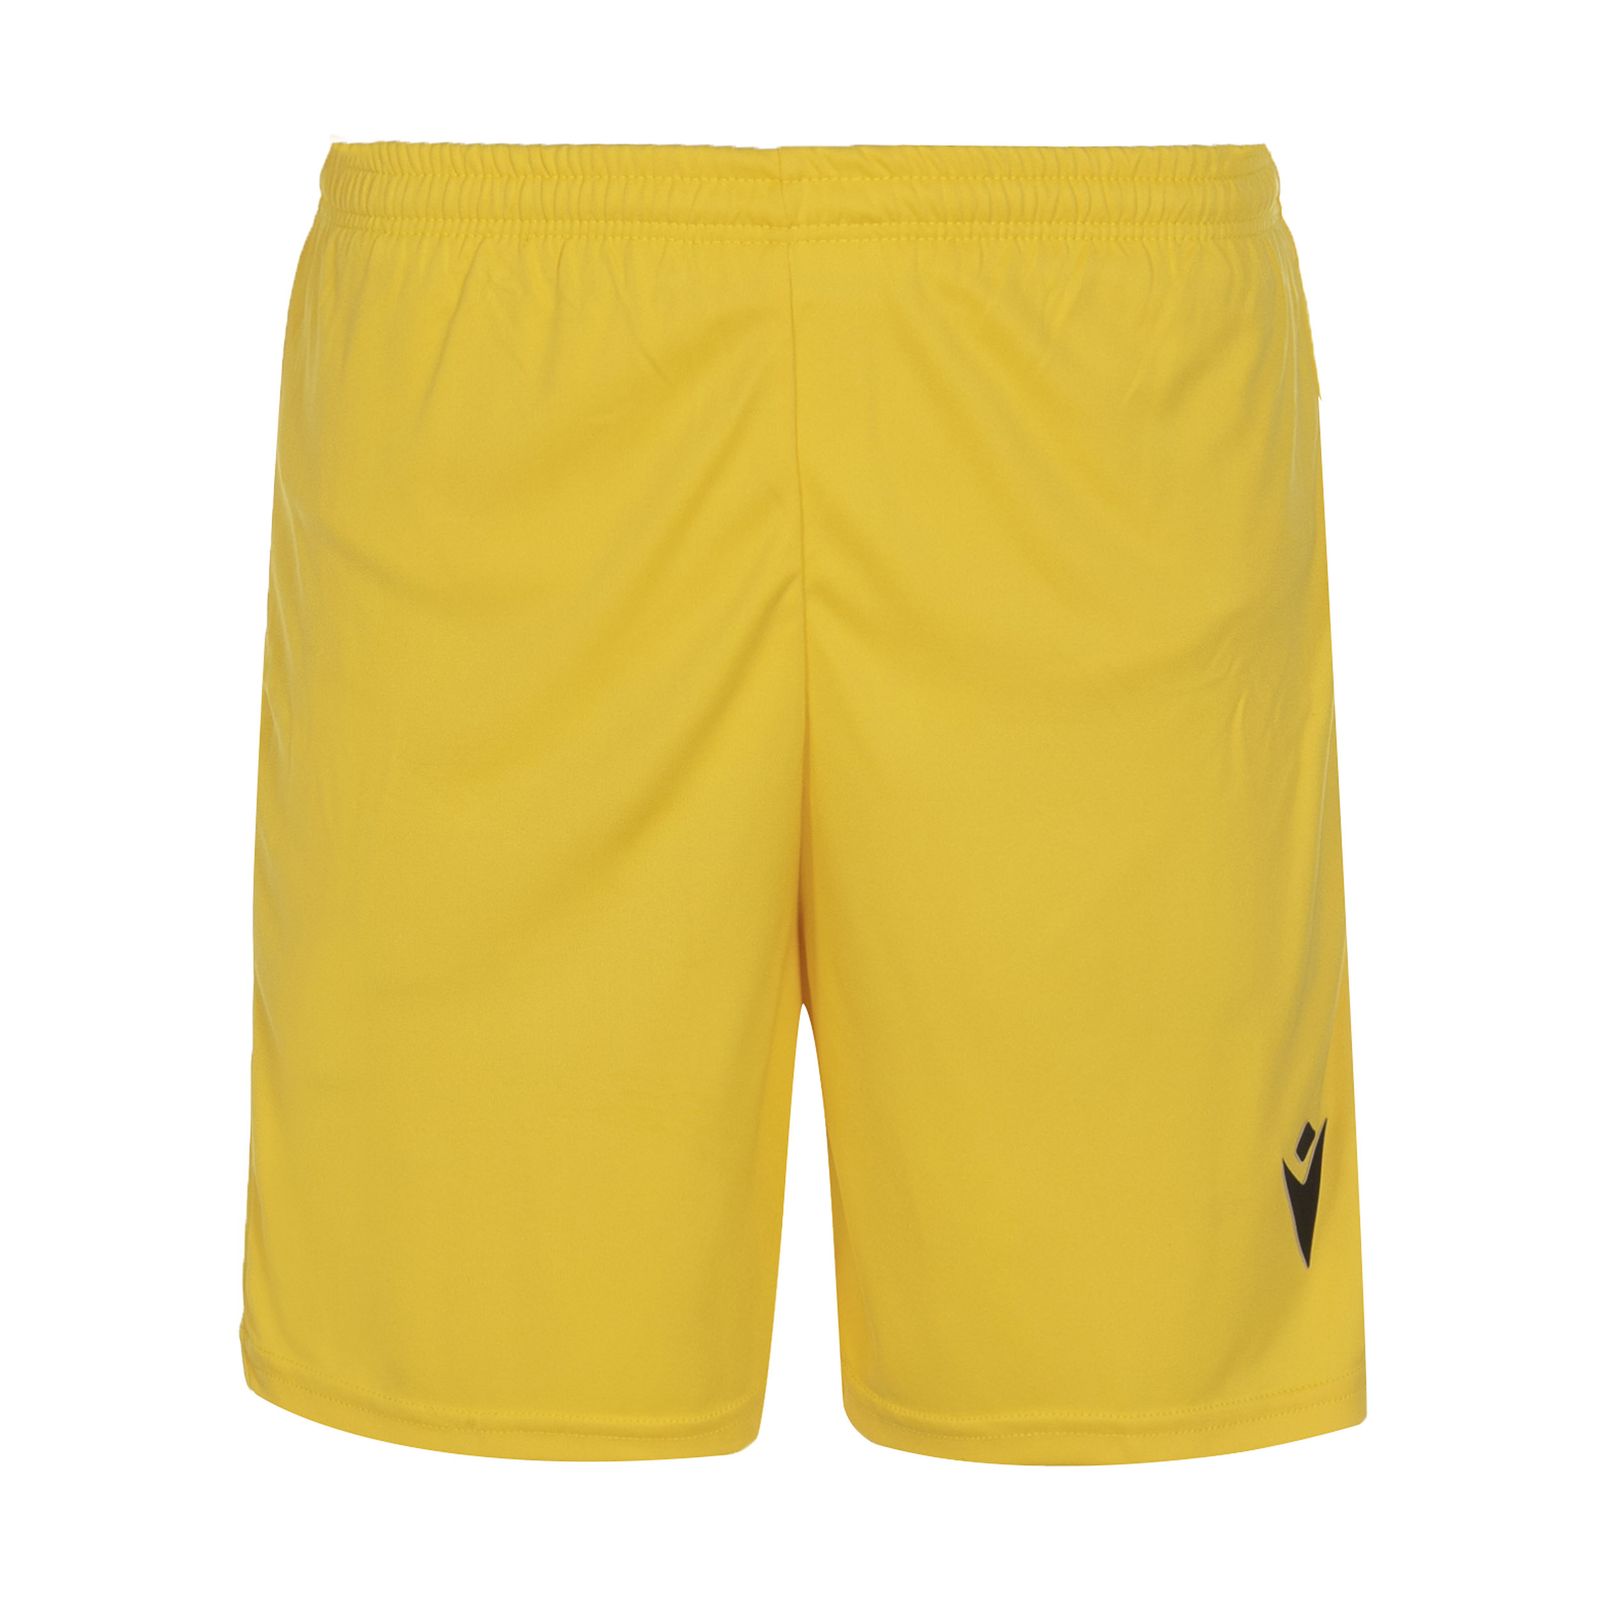  ست تی شرت و شلوارک ورزشی مردانه مکرون مدل فارست رنگ زرد -  - 2